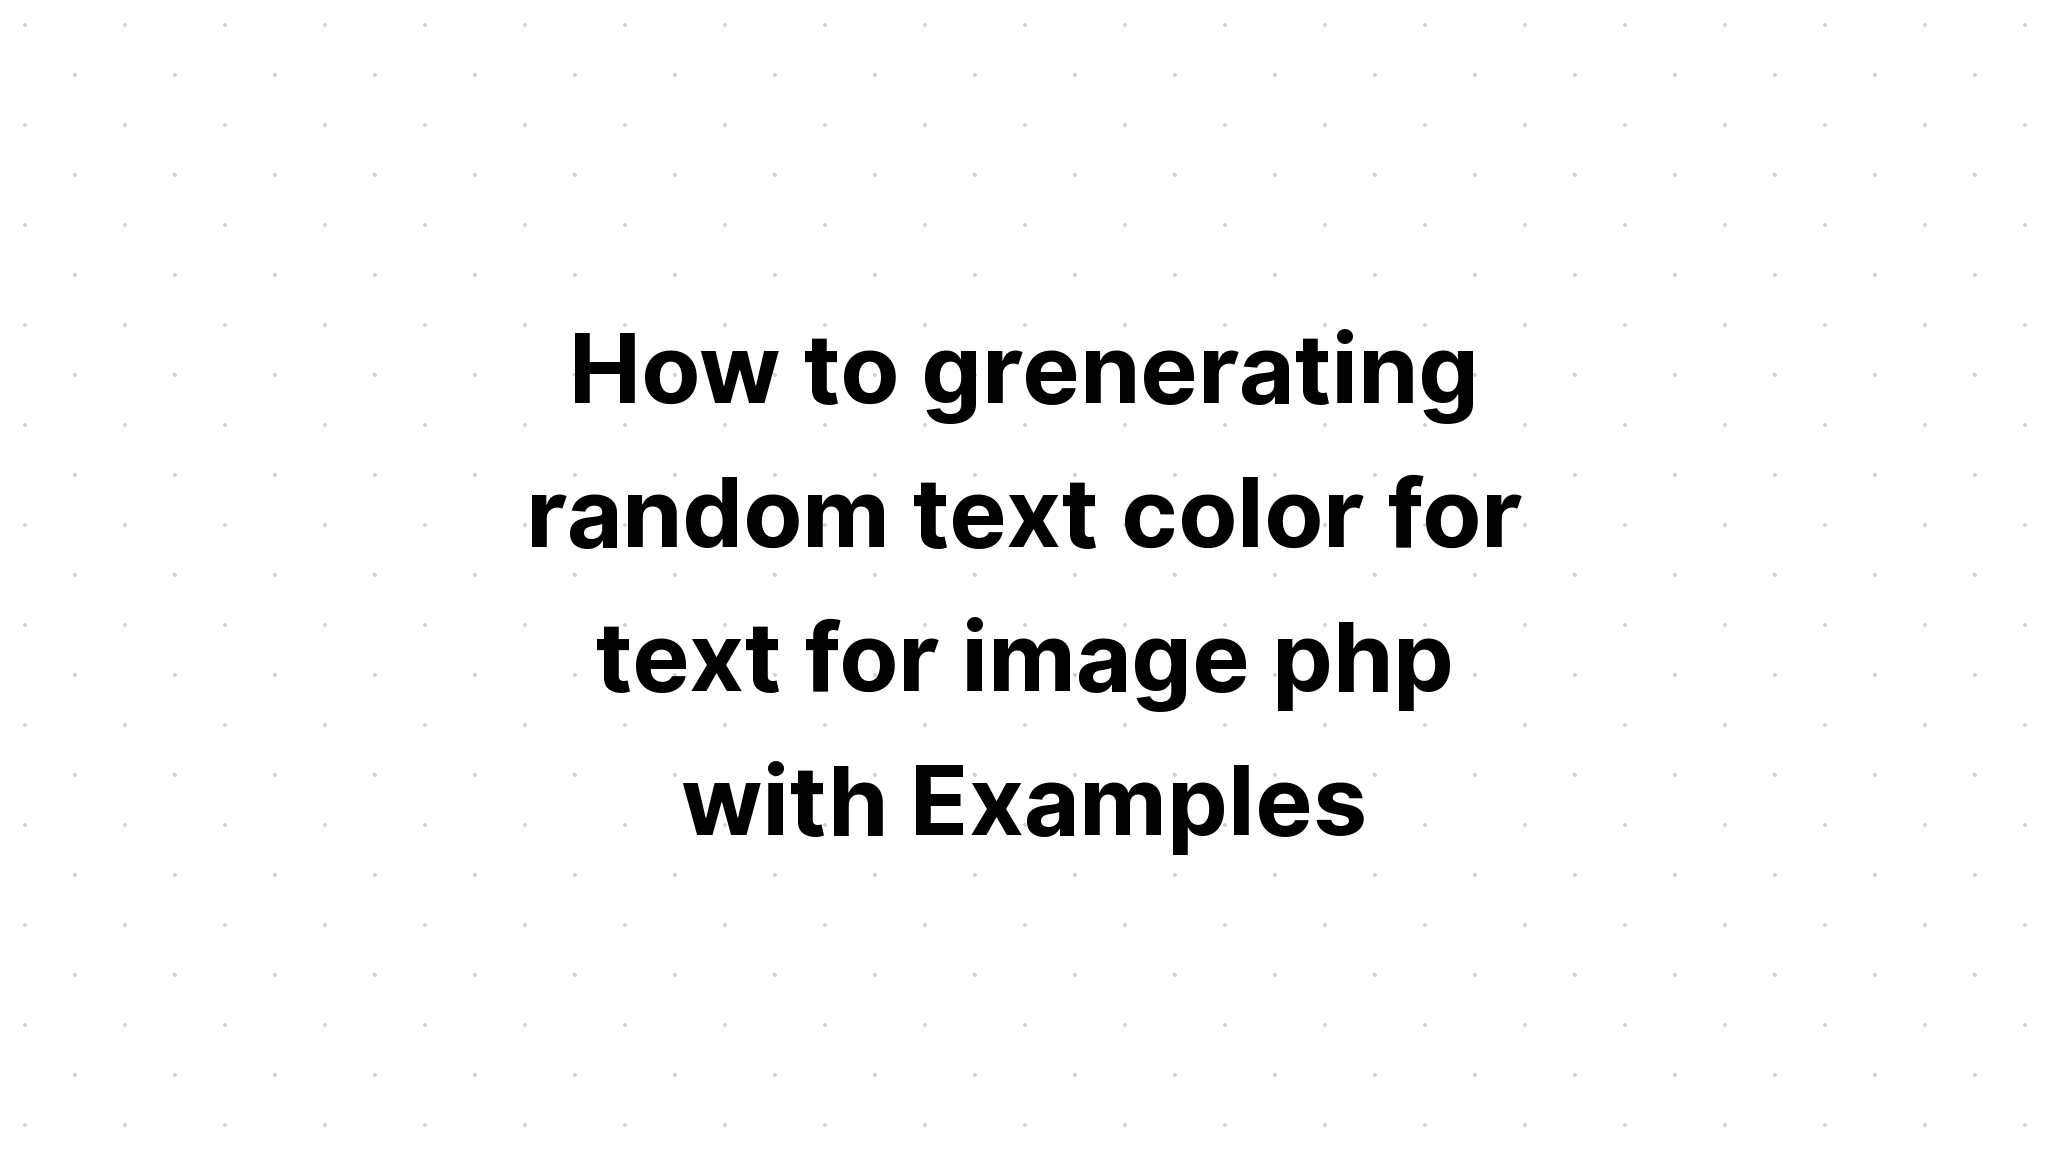 Cách tạo màu văn bản ngẫu nhiên cho văn bản cho hình ảnh php với các ví dụ